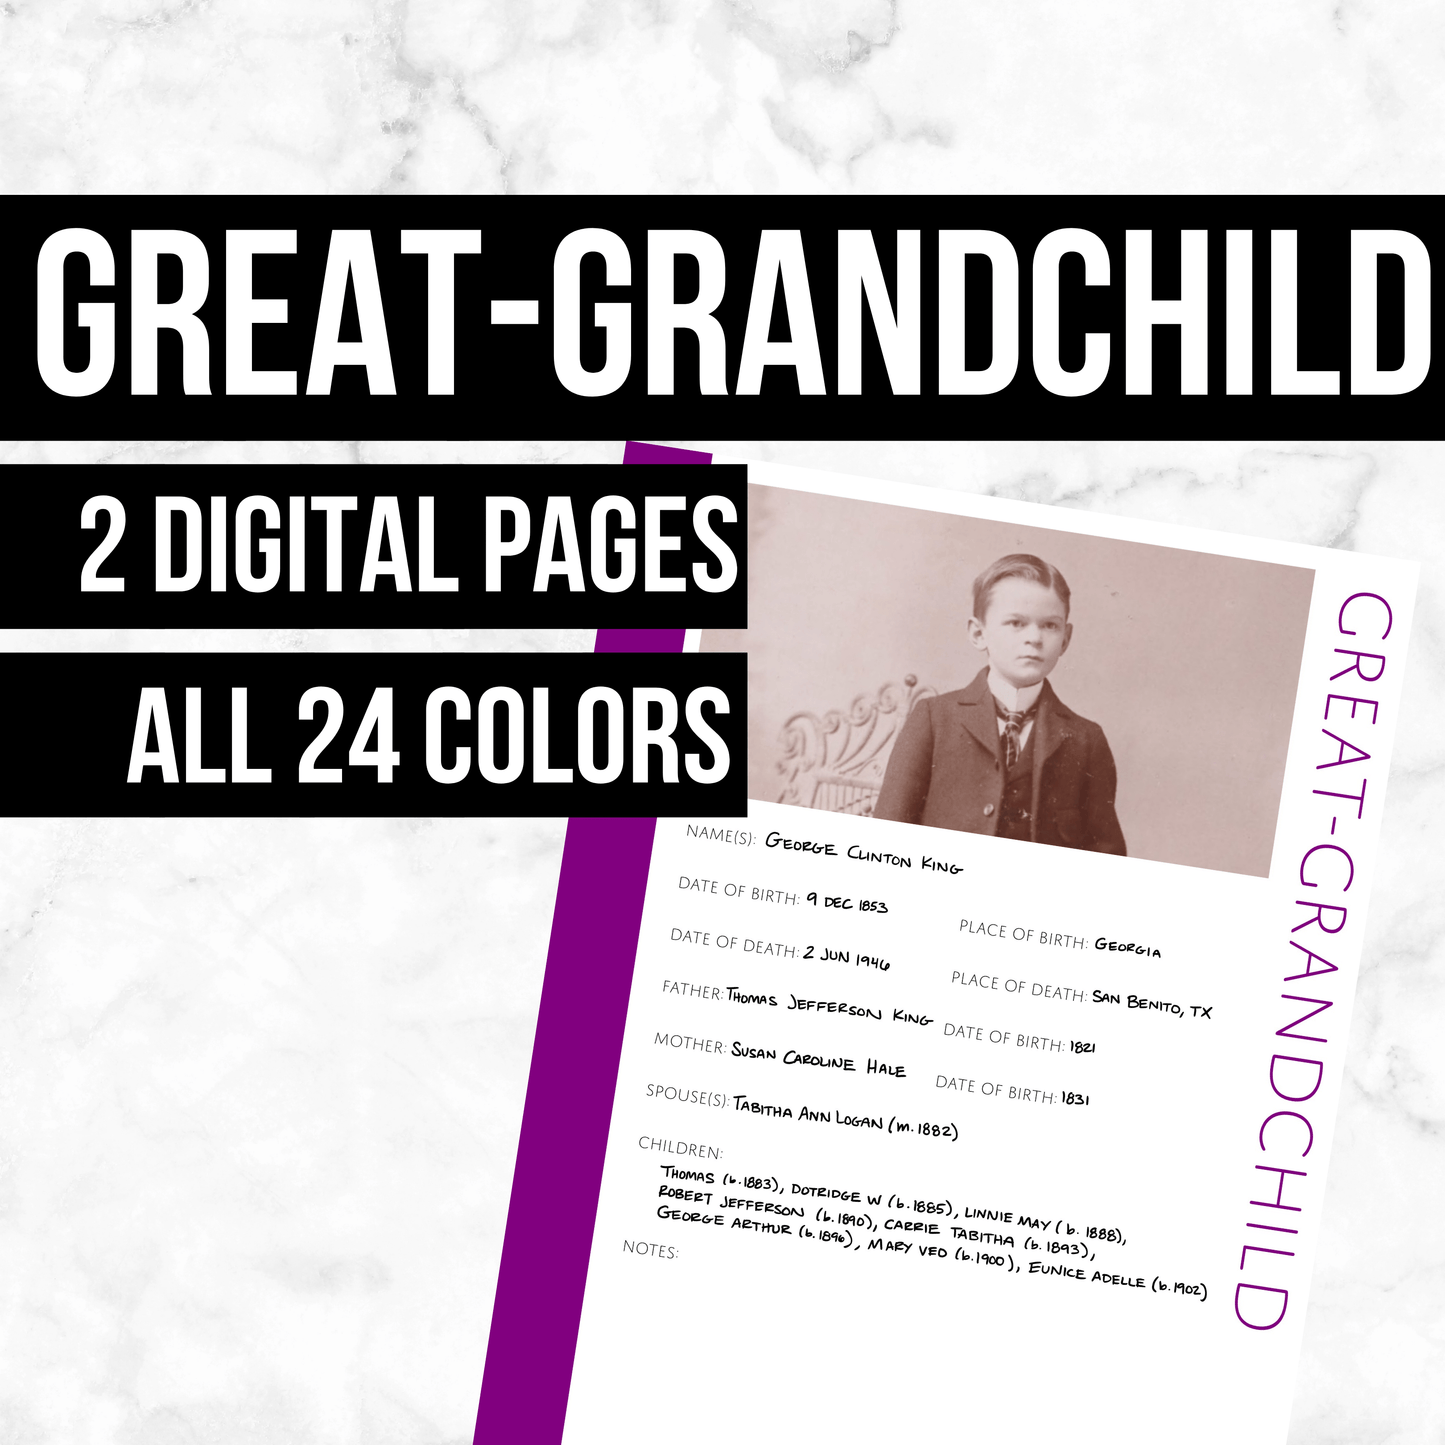 Great-Grandchild: Printable Genealogy Form (Digital Download)